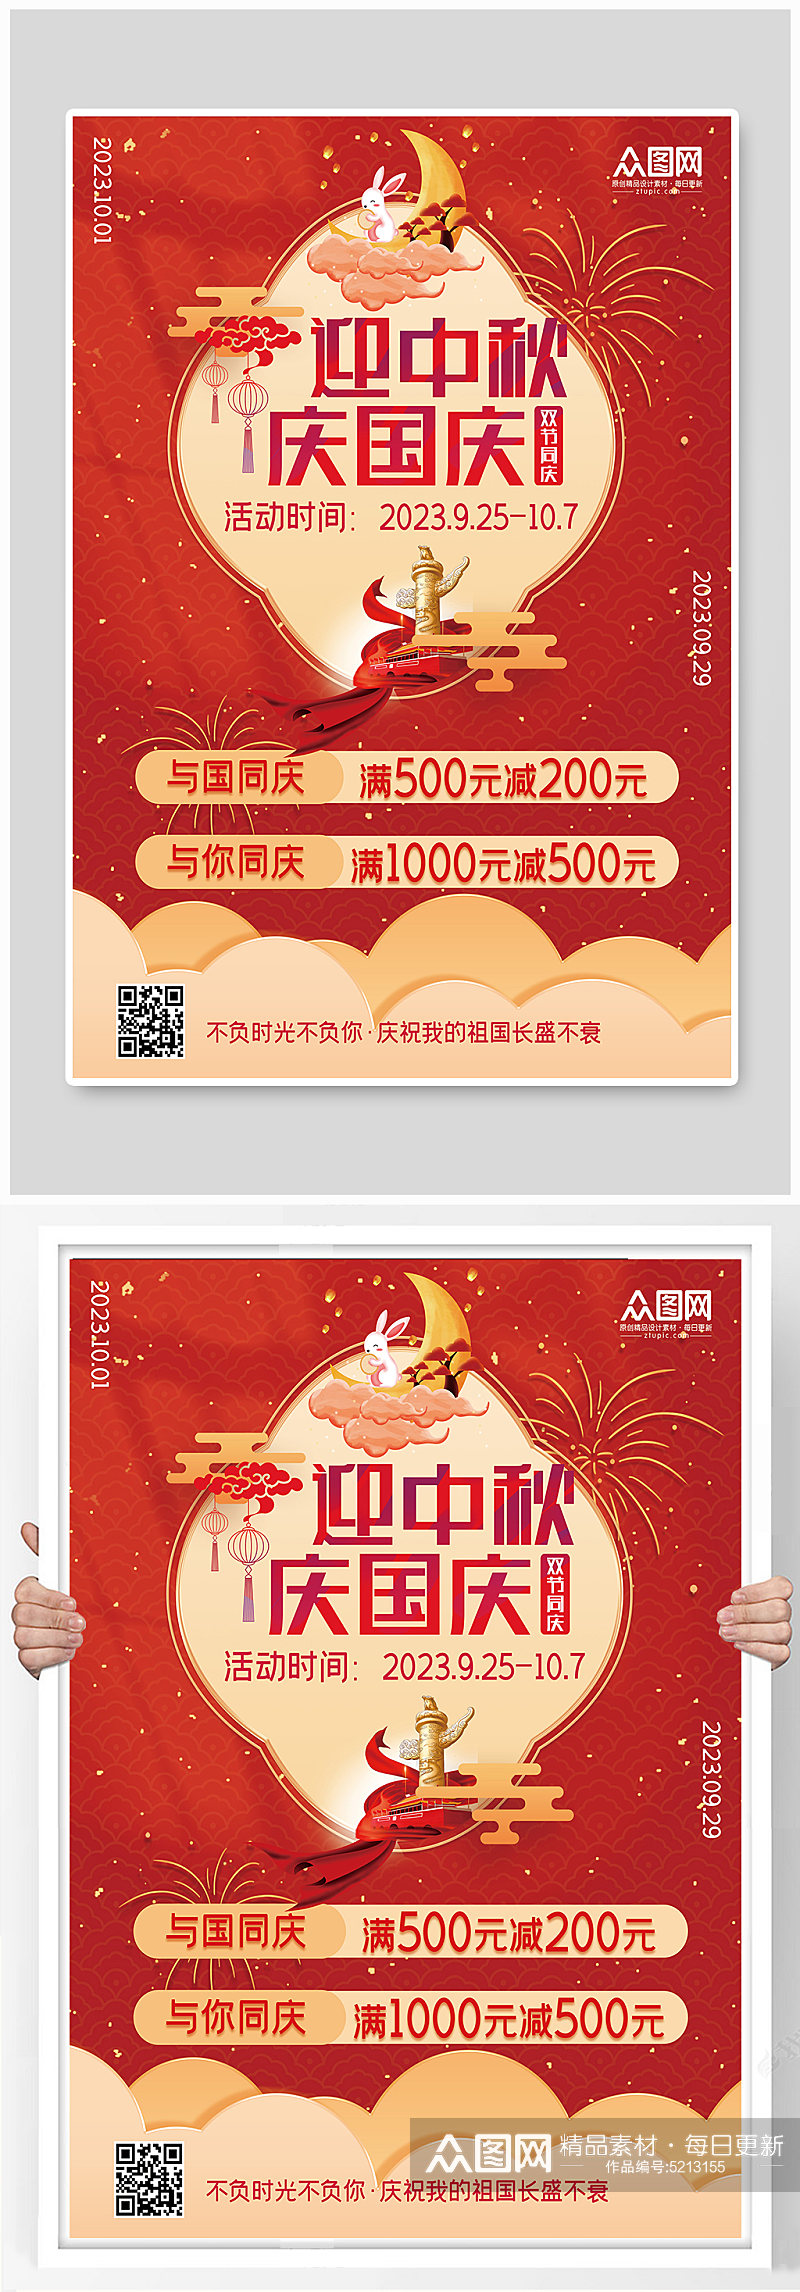 中秋国庆双节庆祝促销海报素材